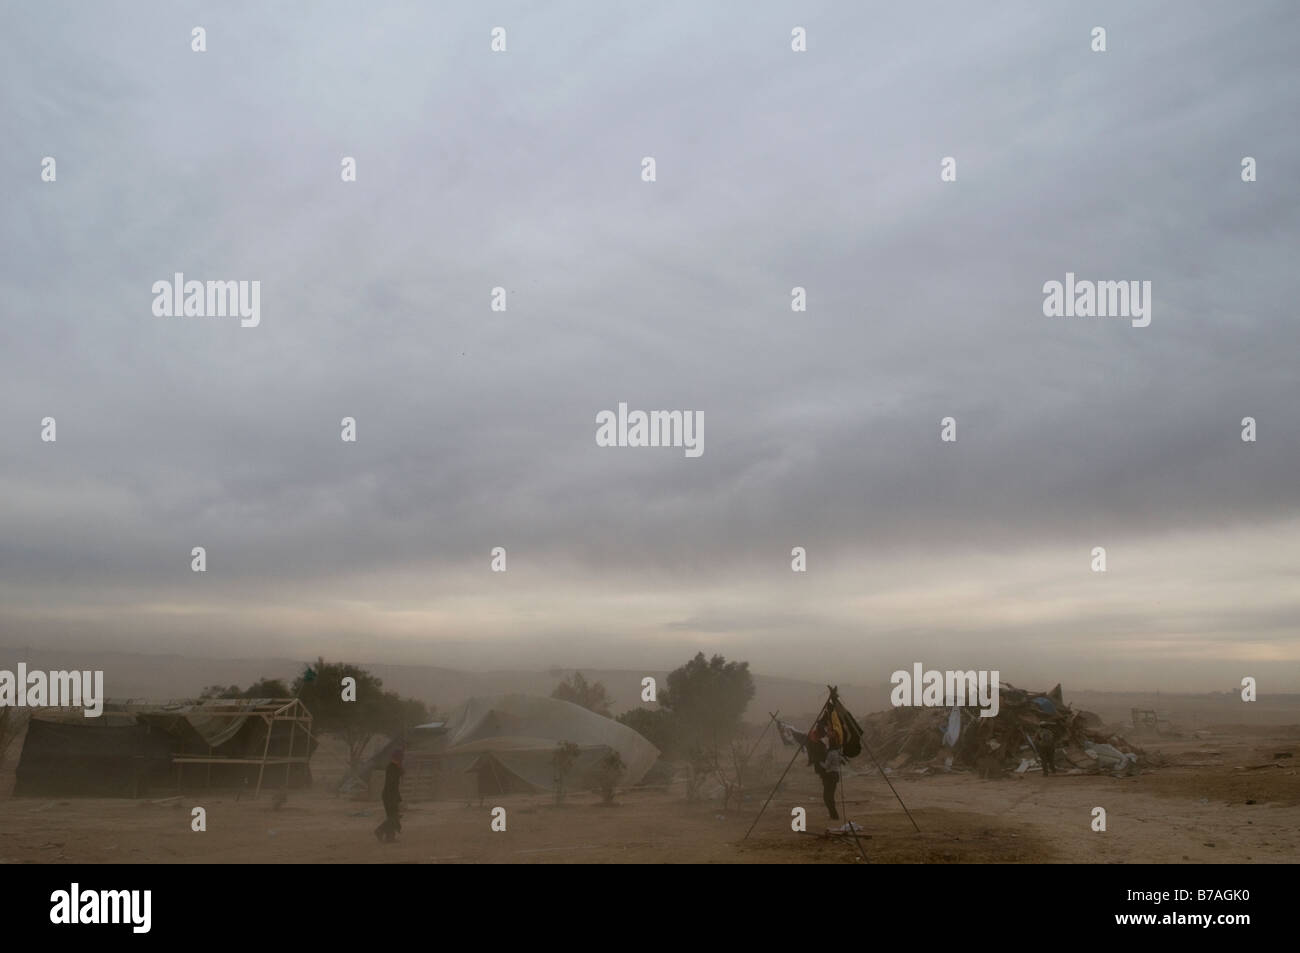 Sandstorm in the unrecognized village of al-Araqib of Al-Turi Arab Bedouin tribe in the Negev desert, Israel Stock Photo